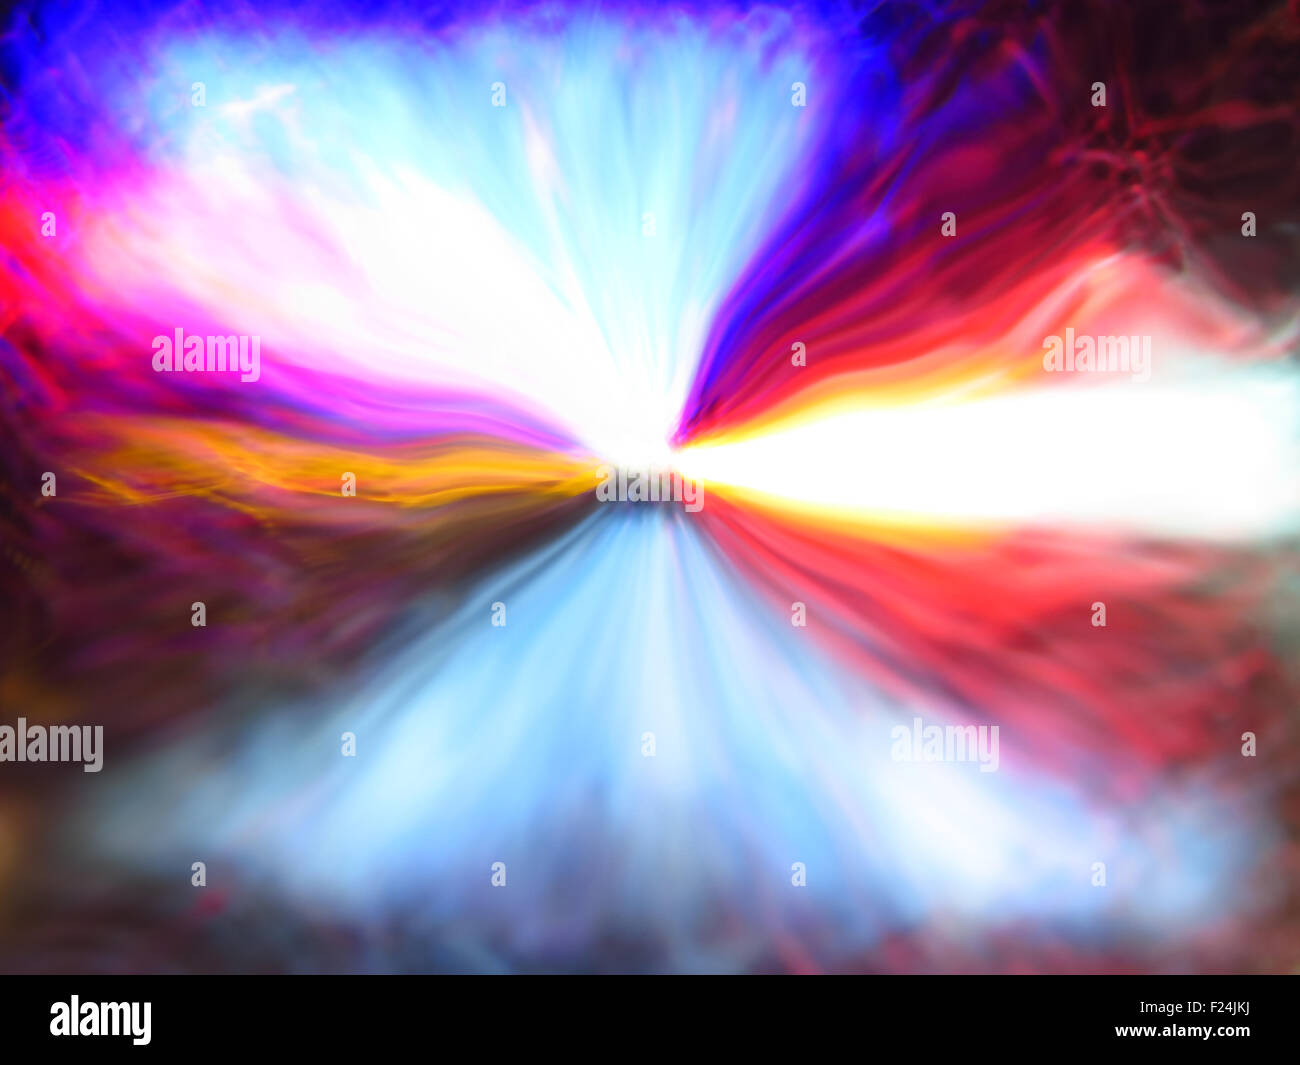 Ein metaphorisches Bild eines explodierenden Sterns verursacht eine spektakuläre bunte Explosion der Energien. Stockfoto